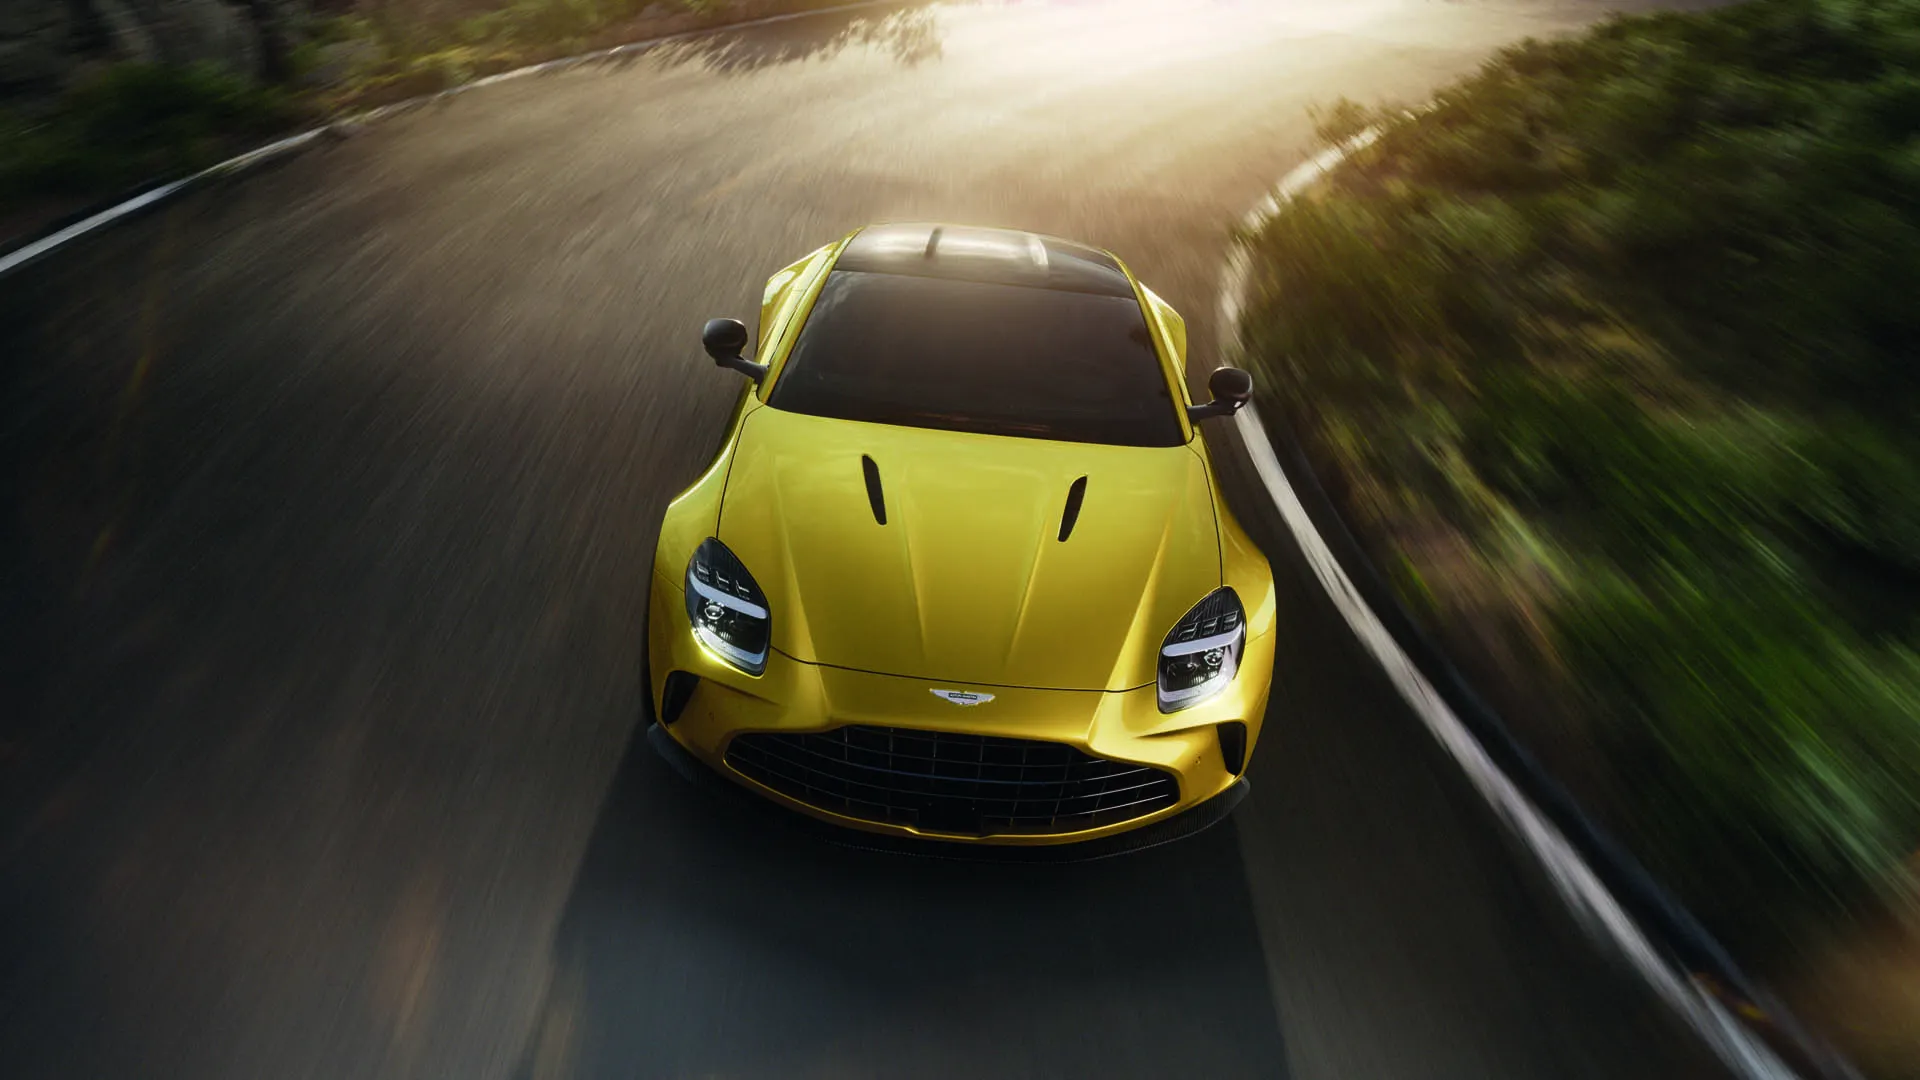 Aston Martin Vantage e Chrysler Halcyon Concept 2025: le migliori foto della settimana